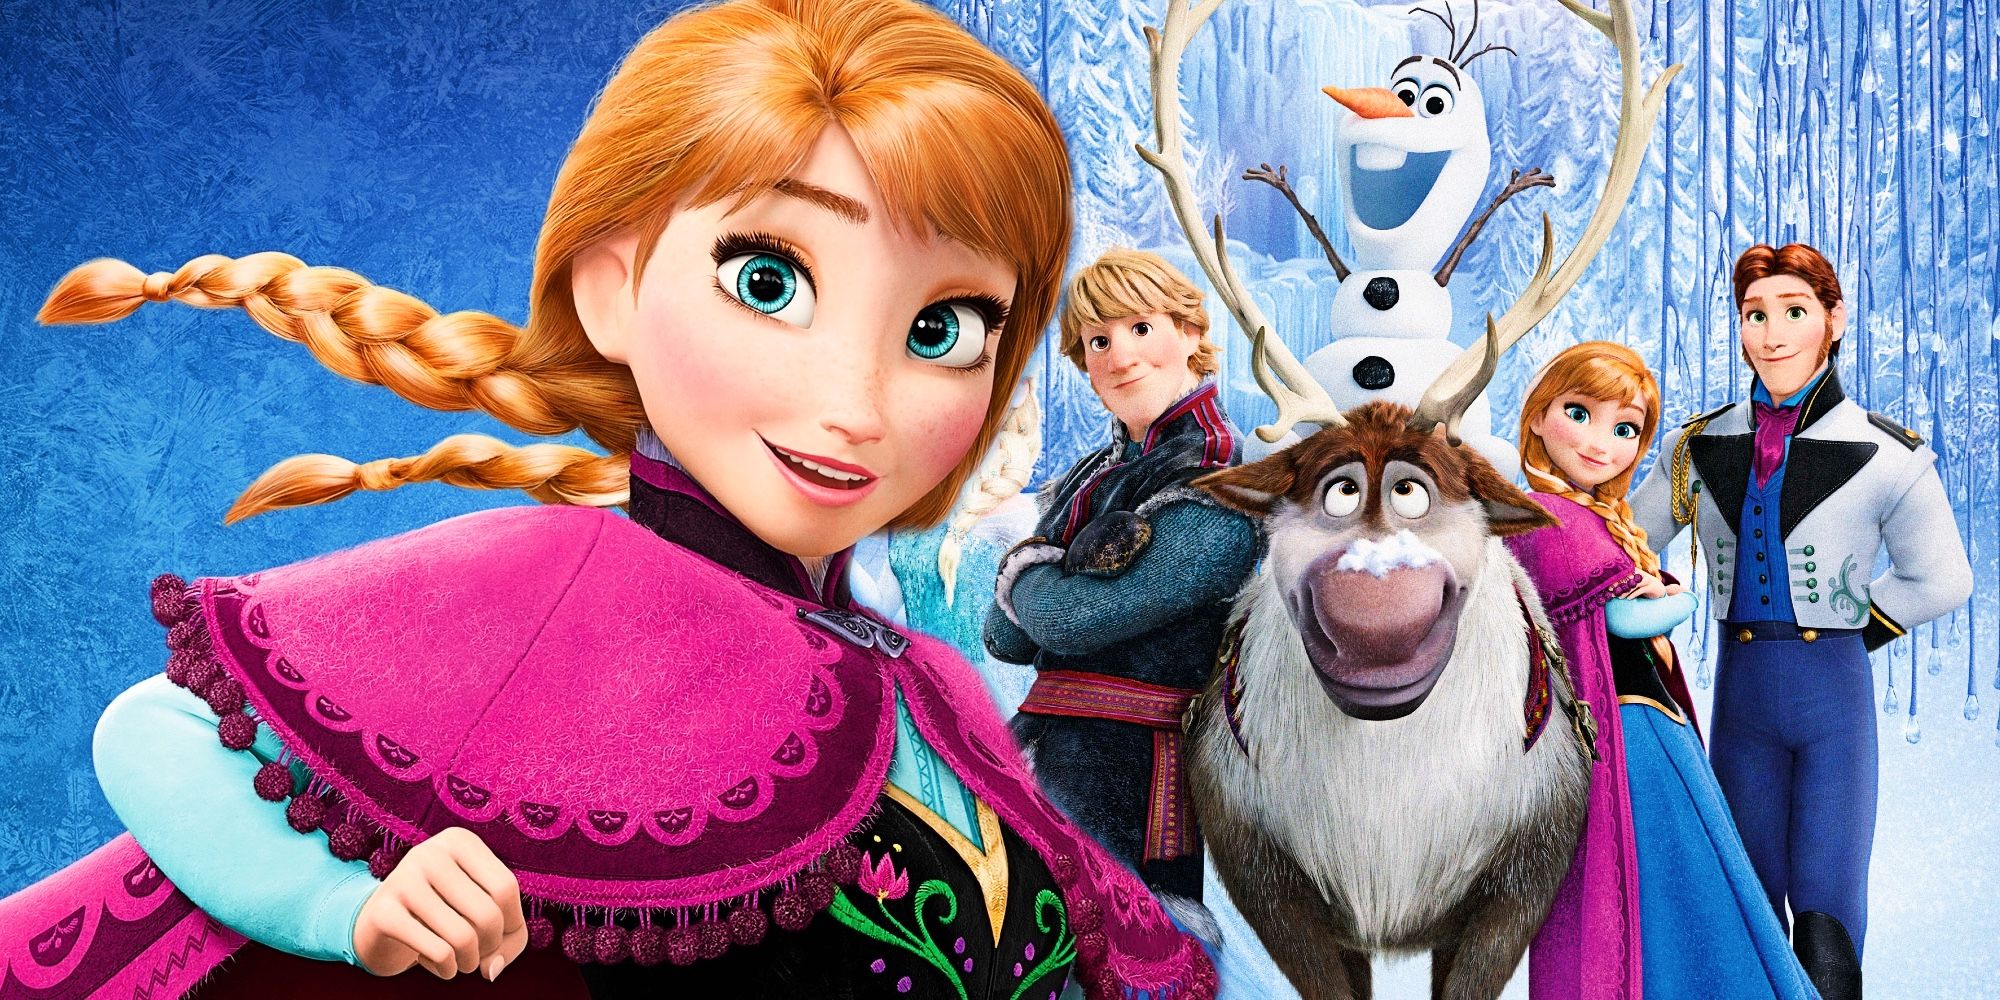 Anna terá poderes de fogo em Frozen 3? Entenda a teoria